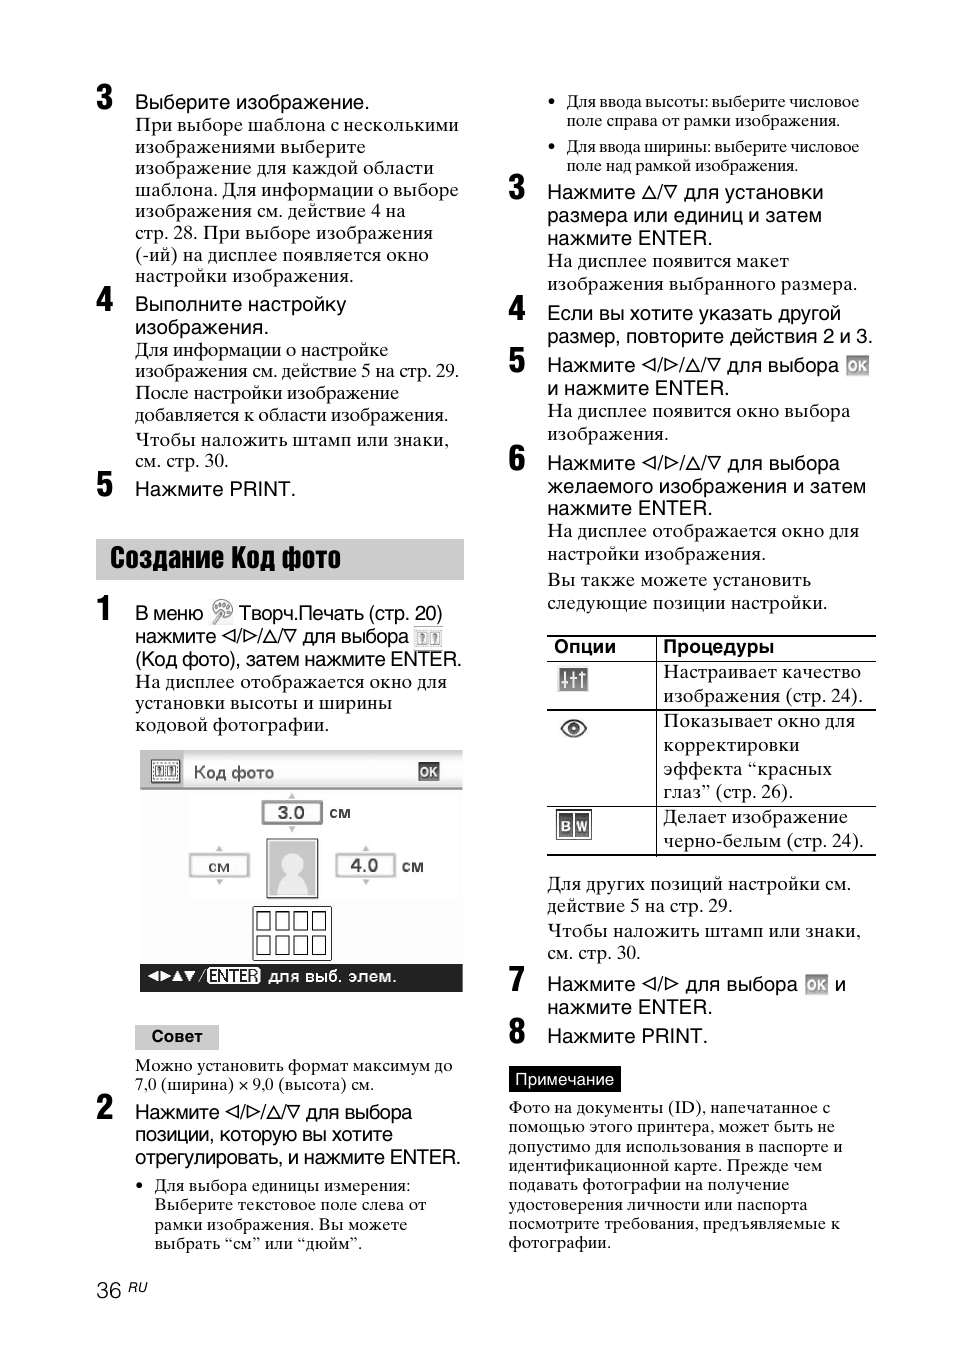 Создание код фото | Инструкция по эксплуатации Sony DPP-FP97 | Страница 36 / 92